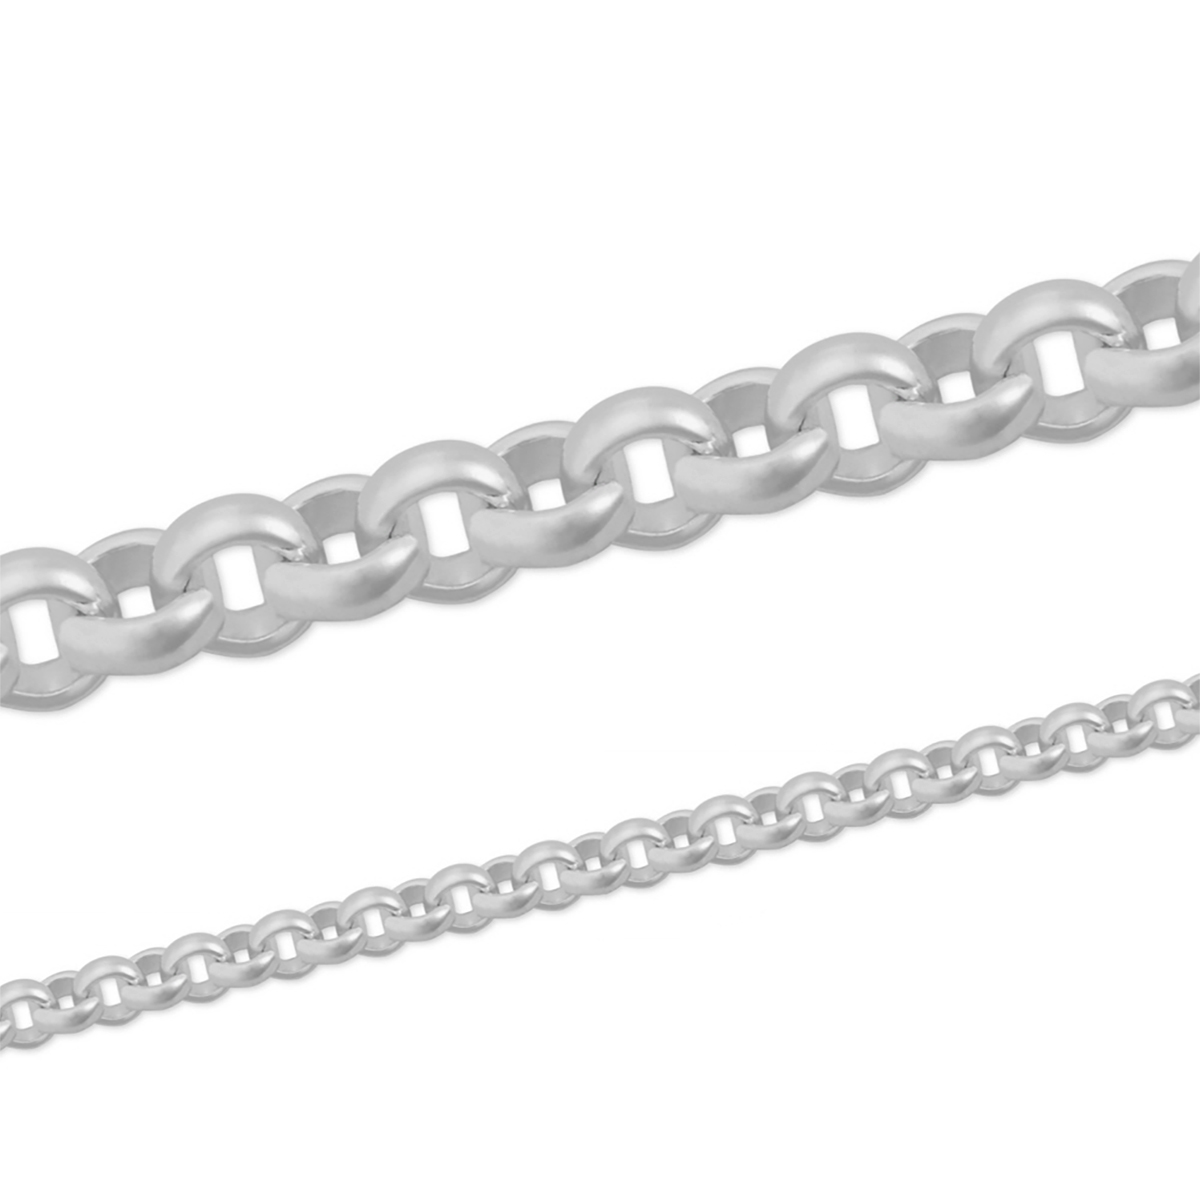 Erbskette, 935/- Silber, Profildraht, rund, Breite 1,6 mm, versilbert, 1 Meter